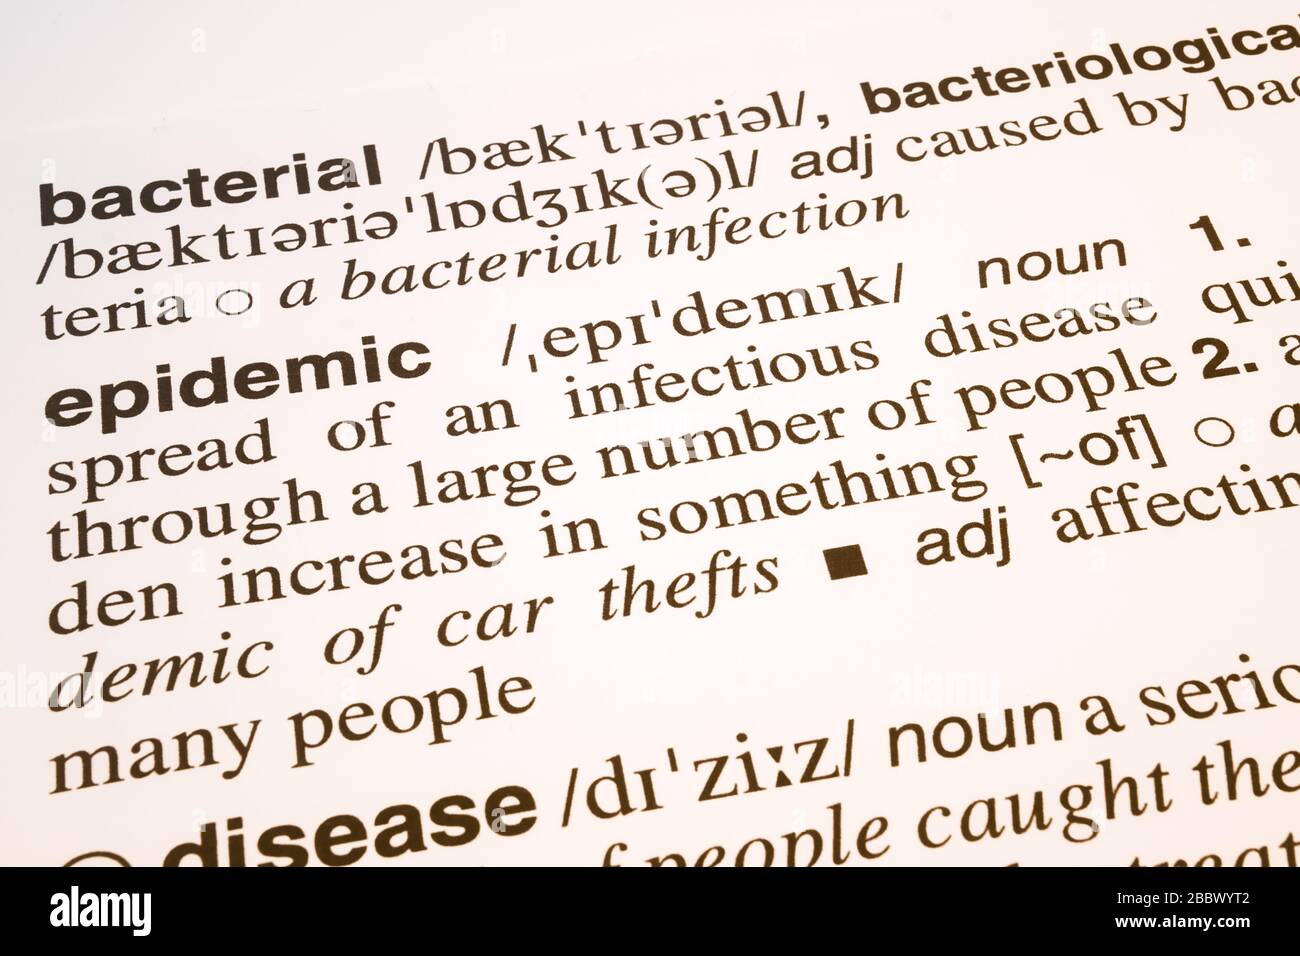 Wort für Bakterien, Epidemien und Krankheiten Bedeutung und Definition im englischen Wörterbuch, Text für Bakterien-, Epidemie- und Krankheitswörter Stockfoto